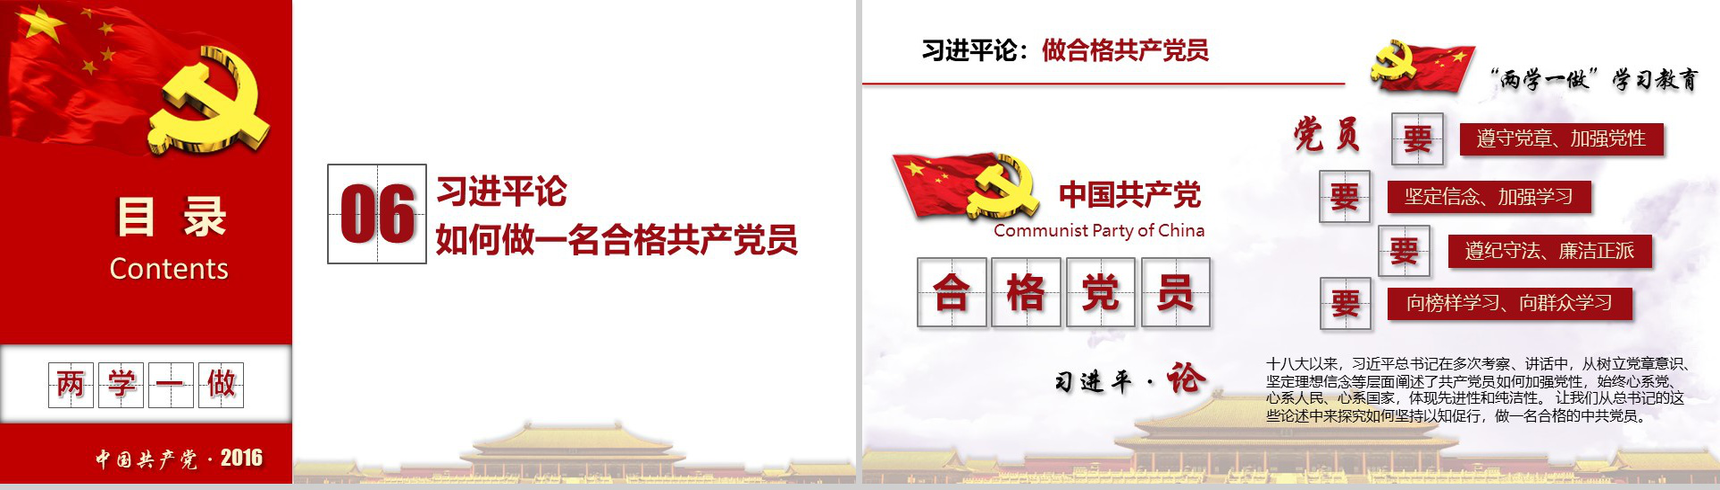 清新简约两学一做中国共产党党章党规学习PPT模板-16